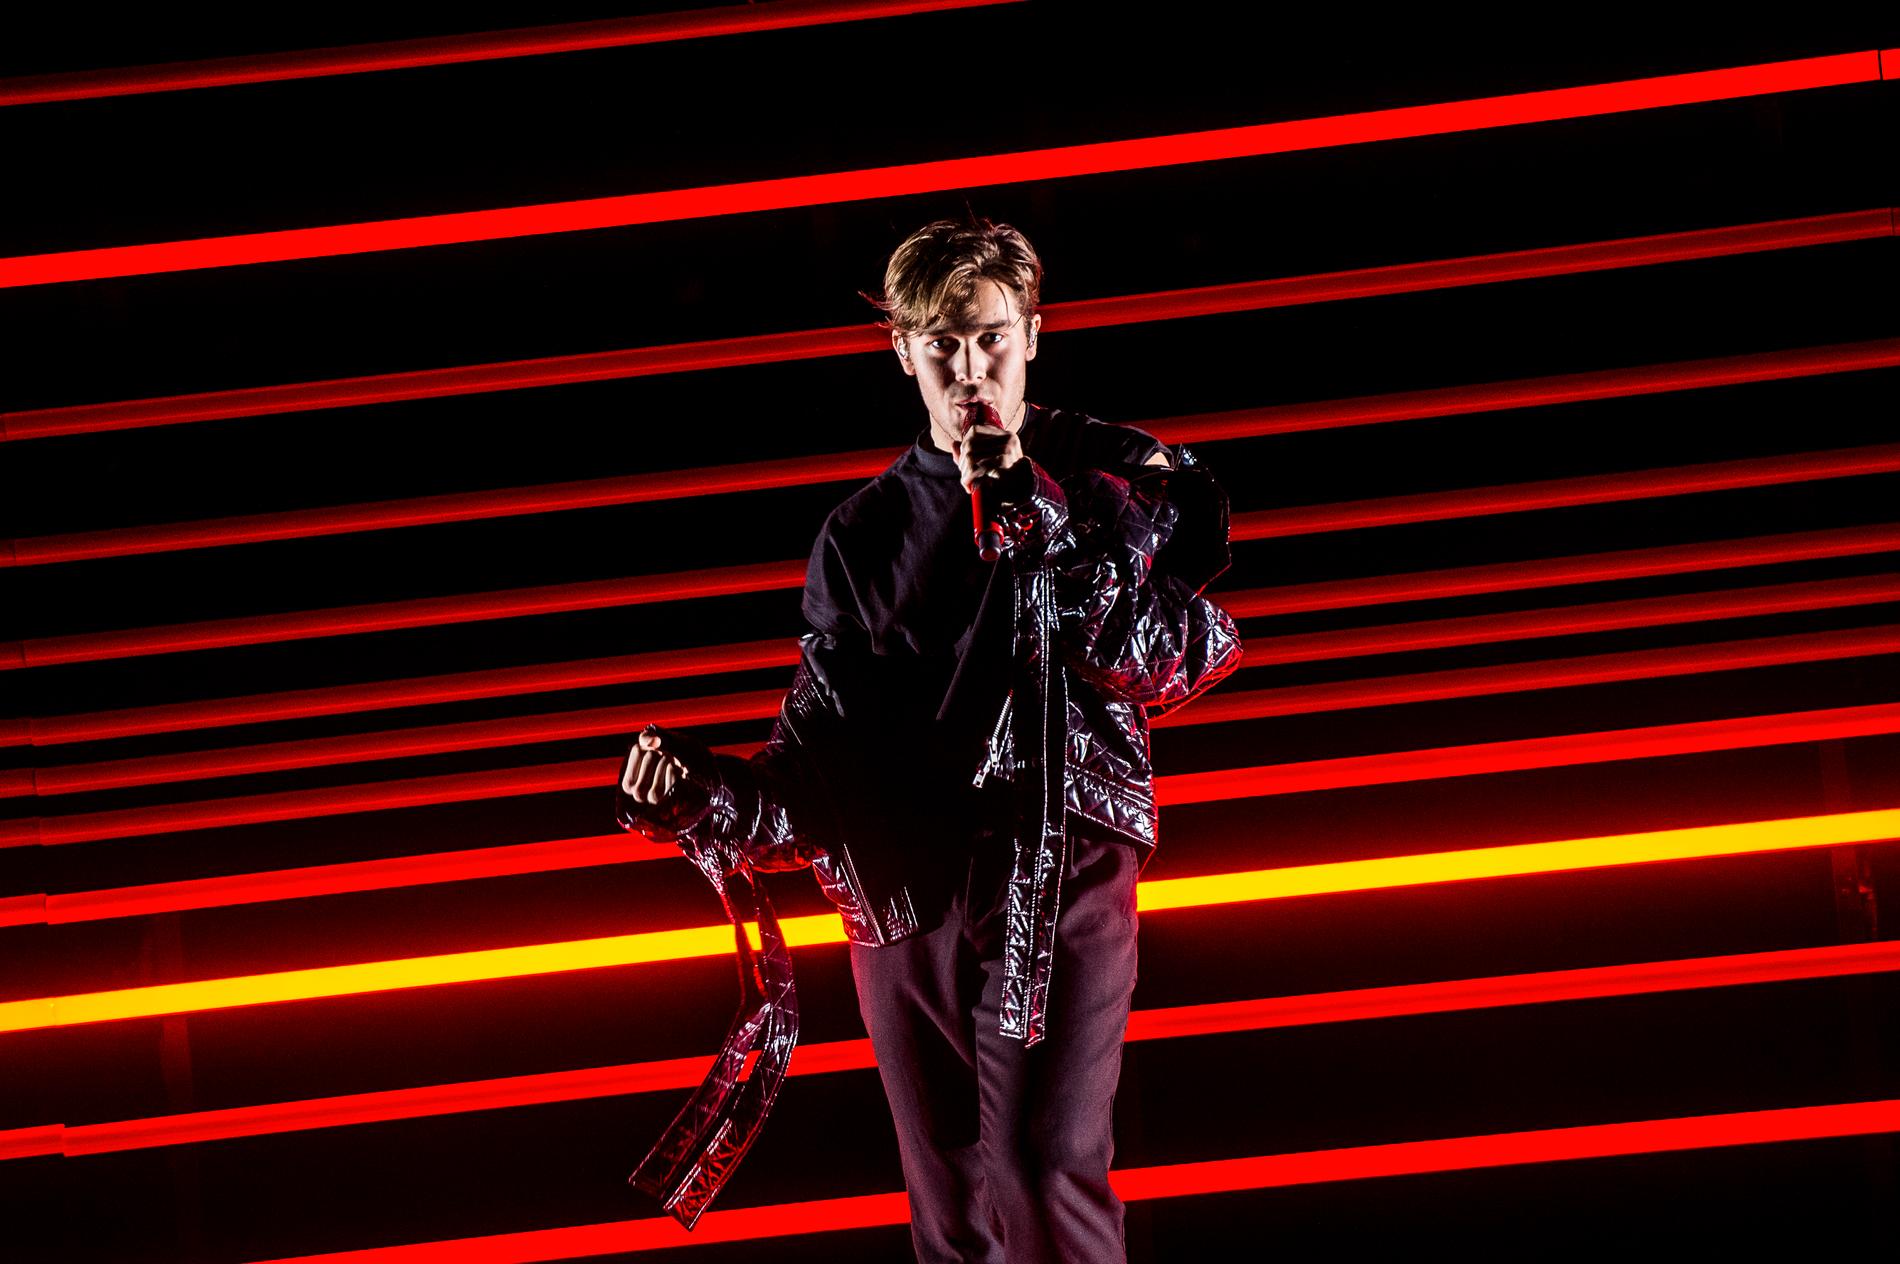 Benjamin gick direkt till finalen av Melodifestivalen med låten ”Dance you off”.